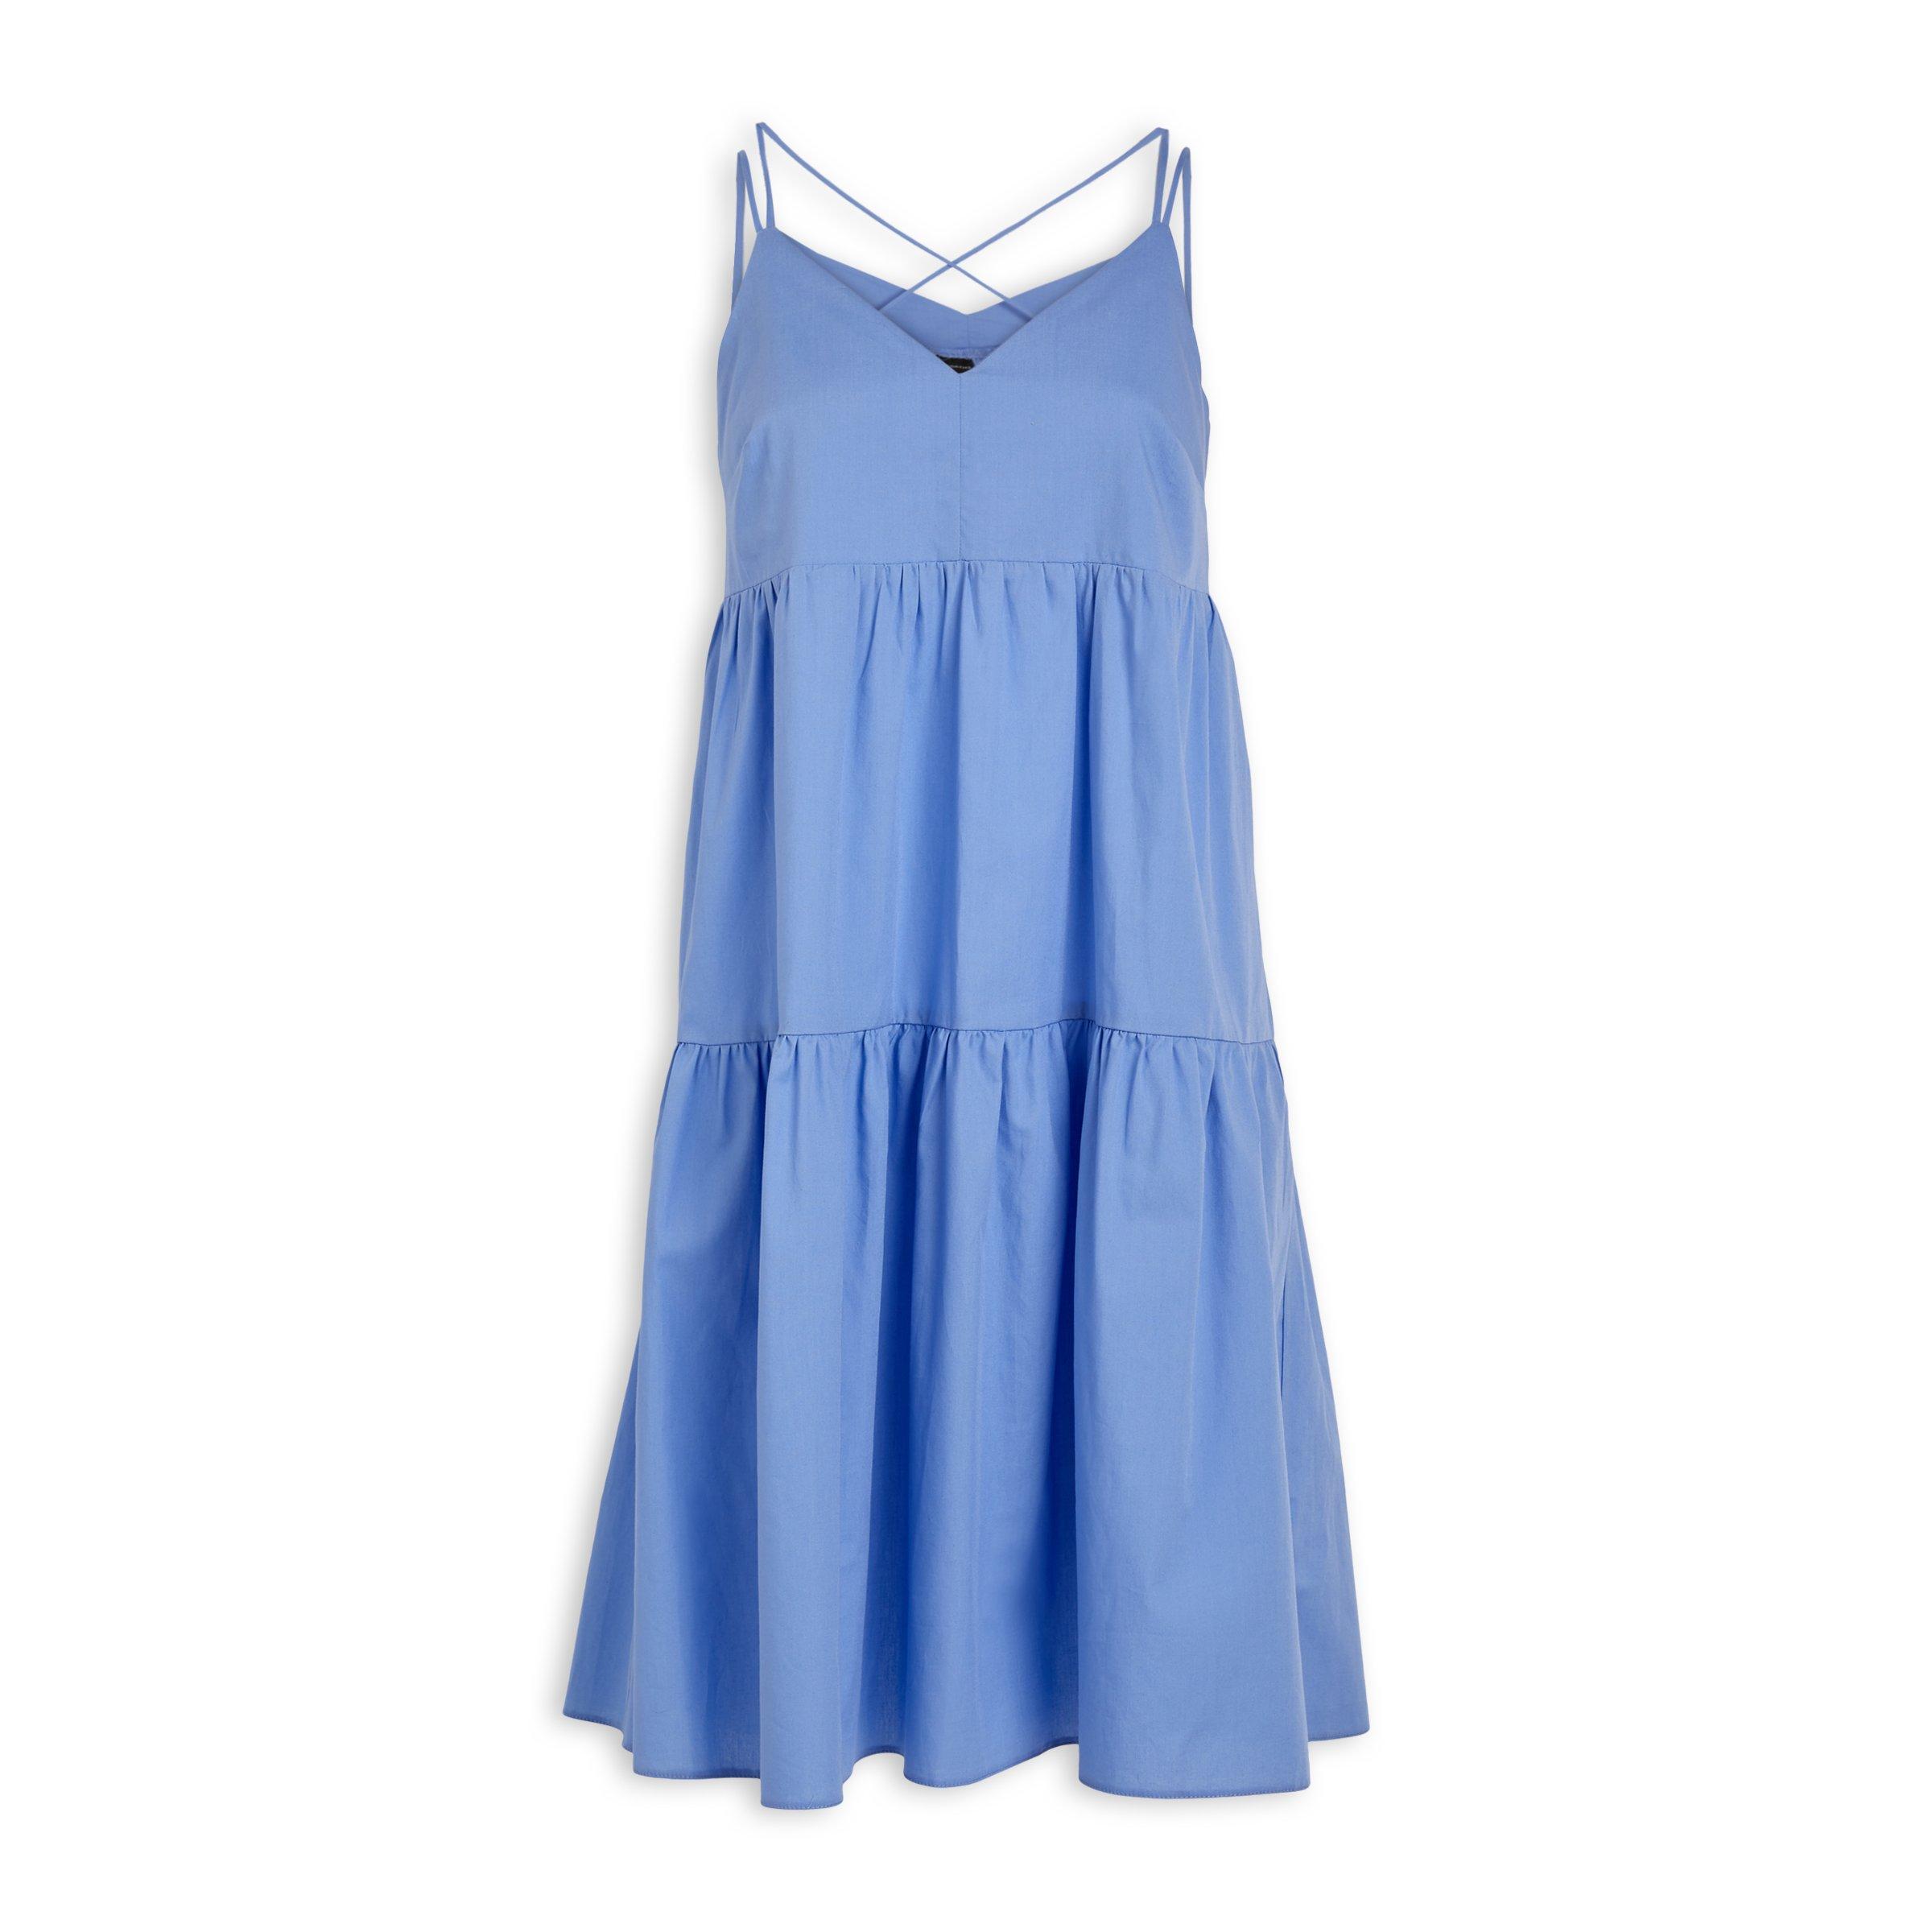 Buy Truworths French Blue Dress Online | Truworths